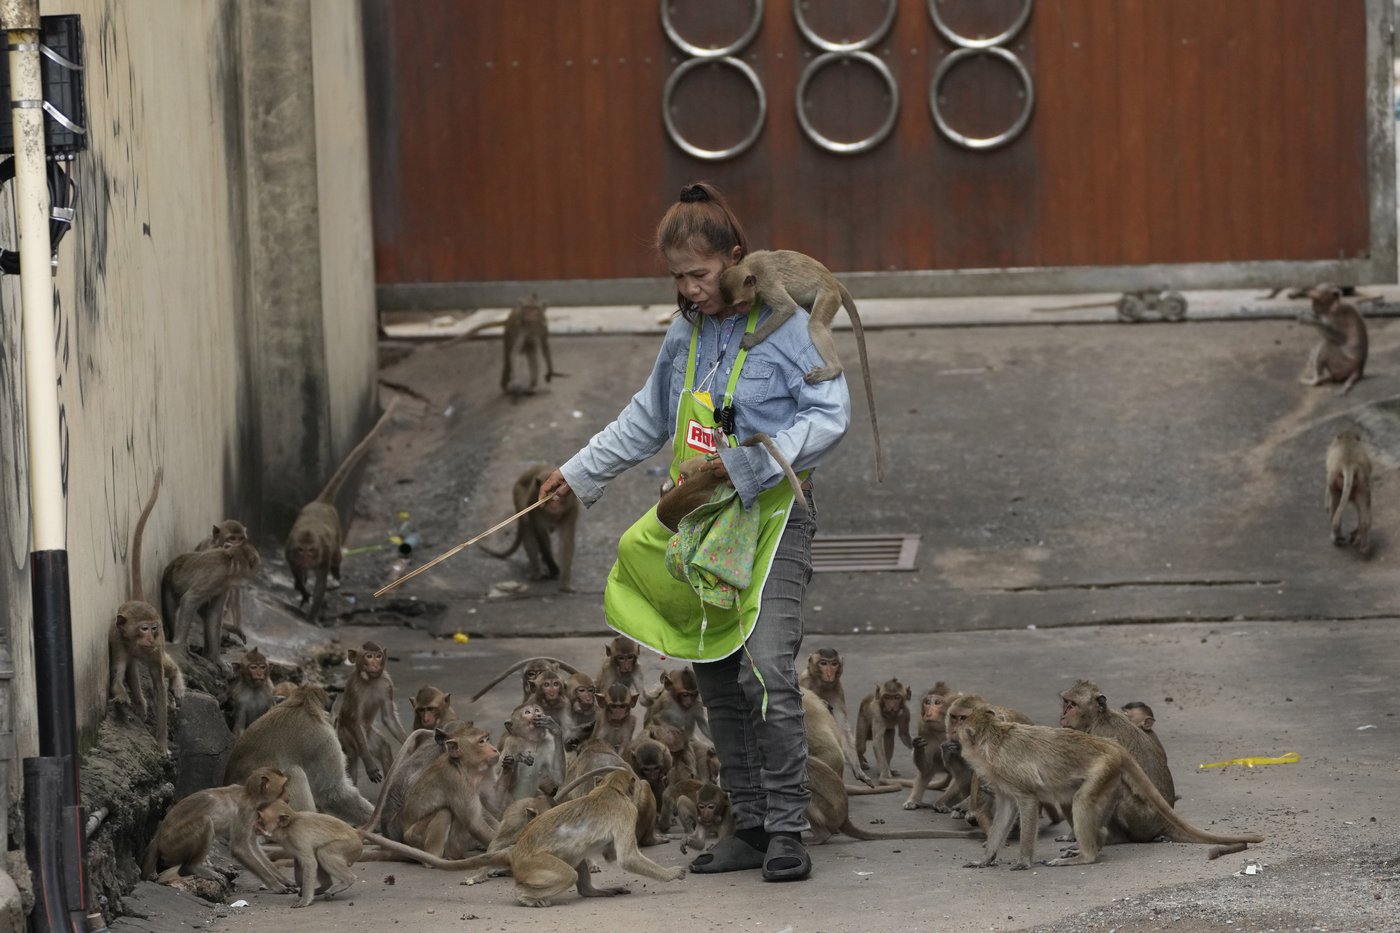 Une ville de Thaïlande tente de contrôler la population de singes sauvages